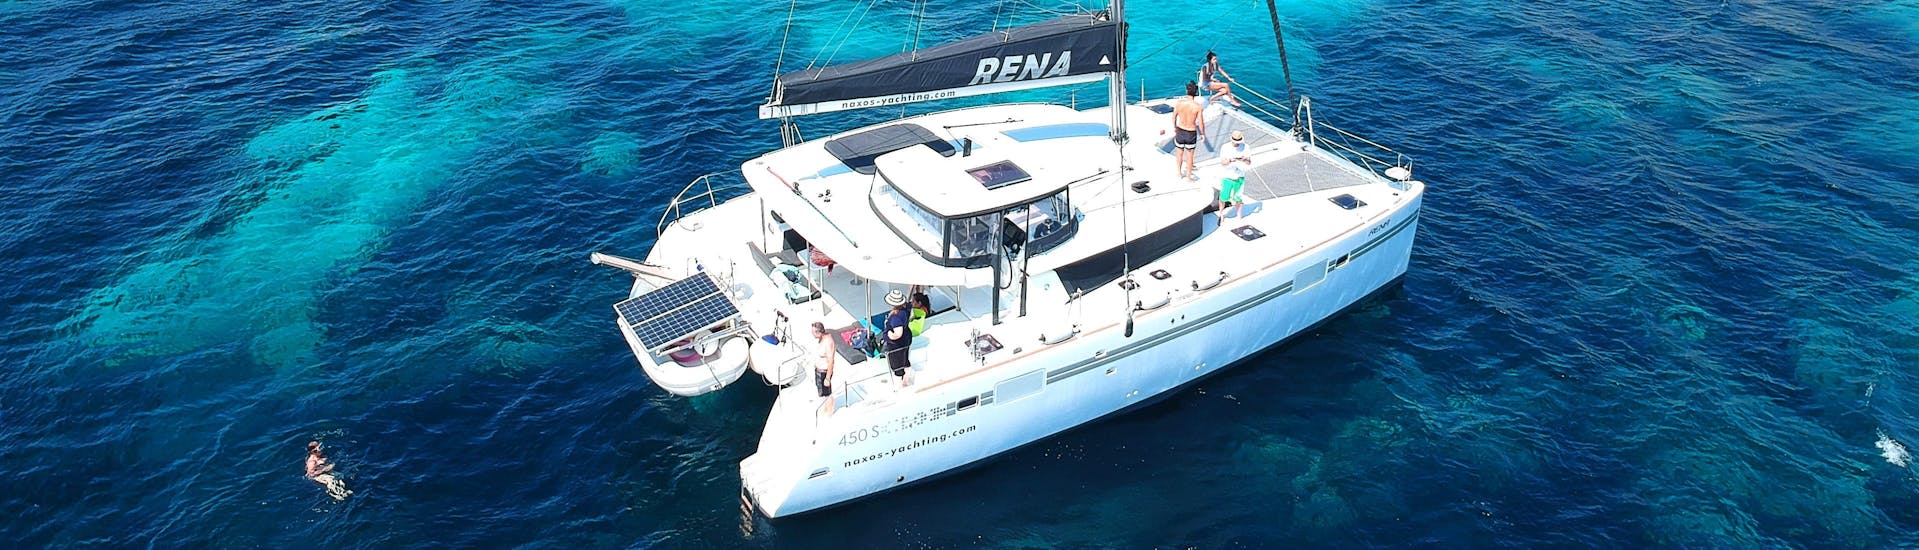 Il catamarano usato da Naxos Yachting per la Crociera di lusso da Naxos con sosta per lo snorkeling.